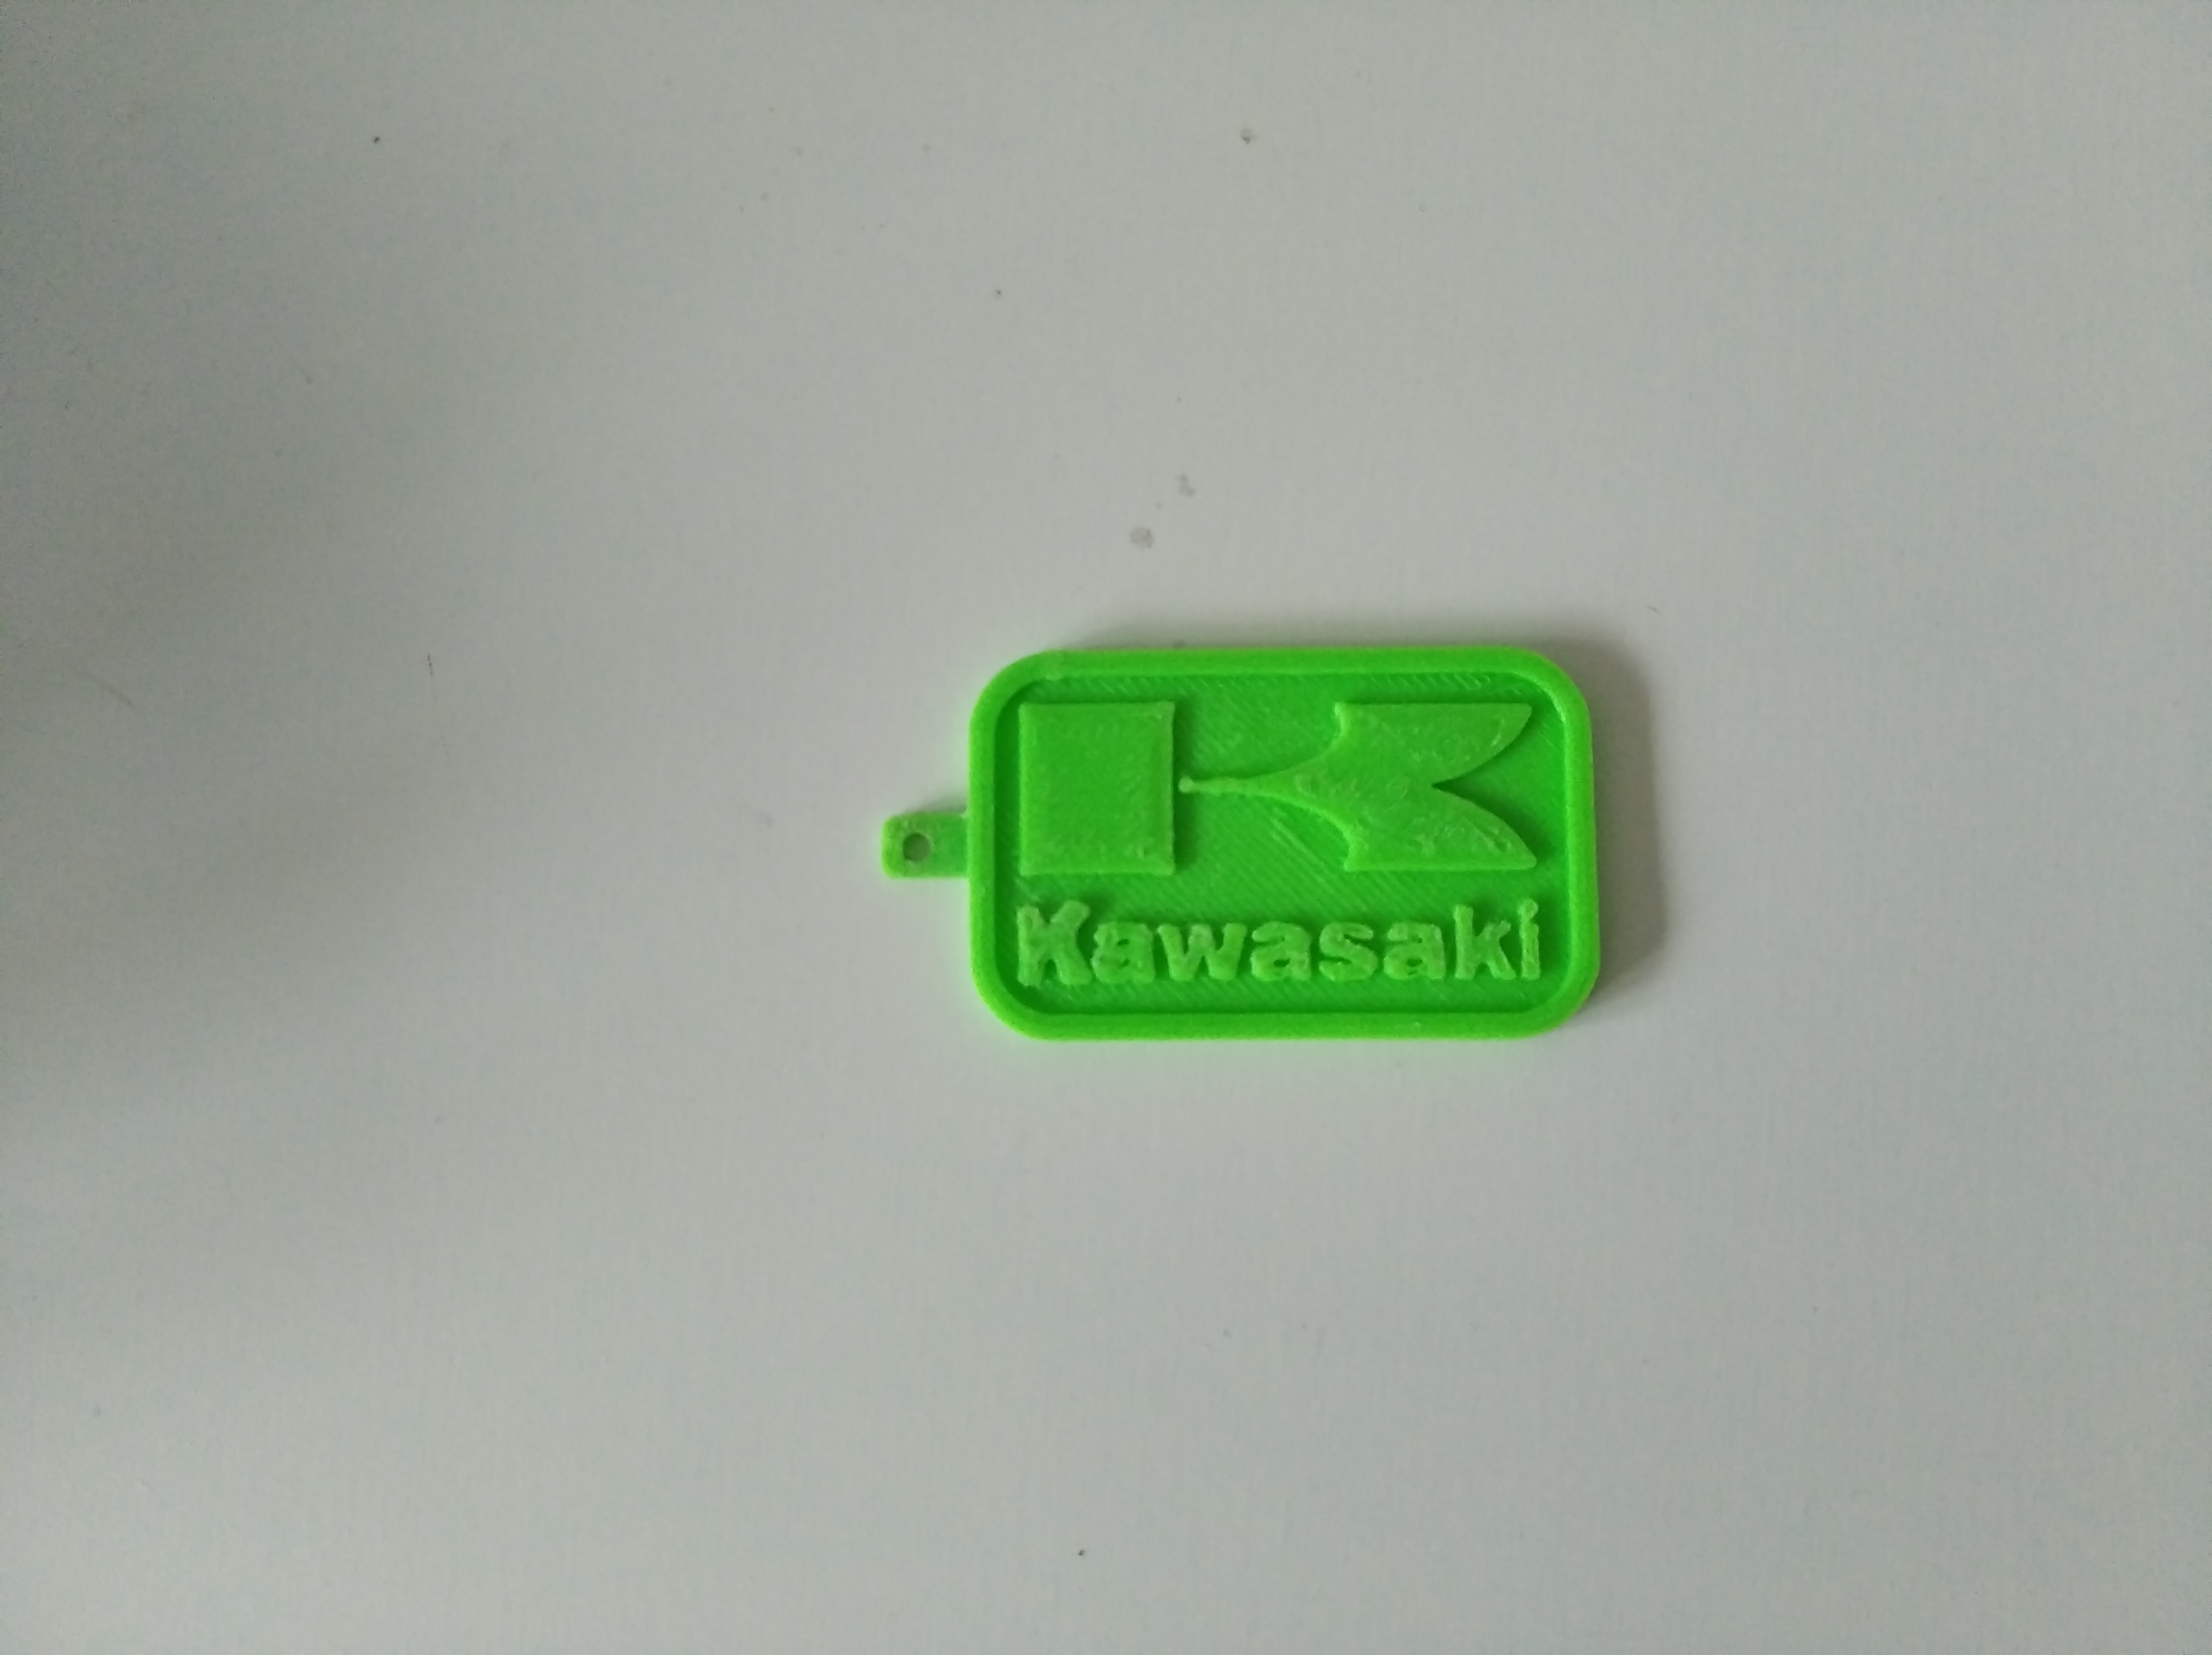 Kawasaki keychain